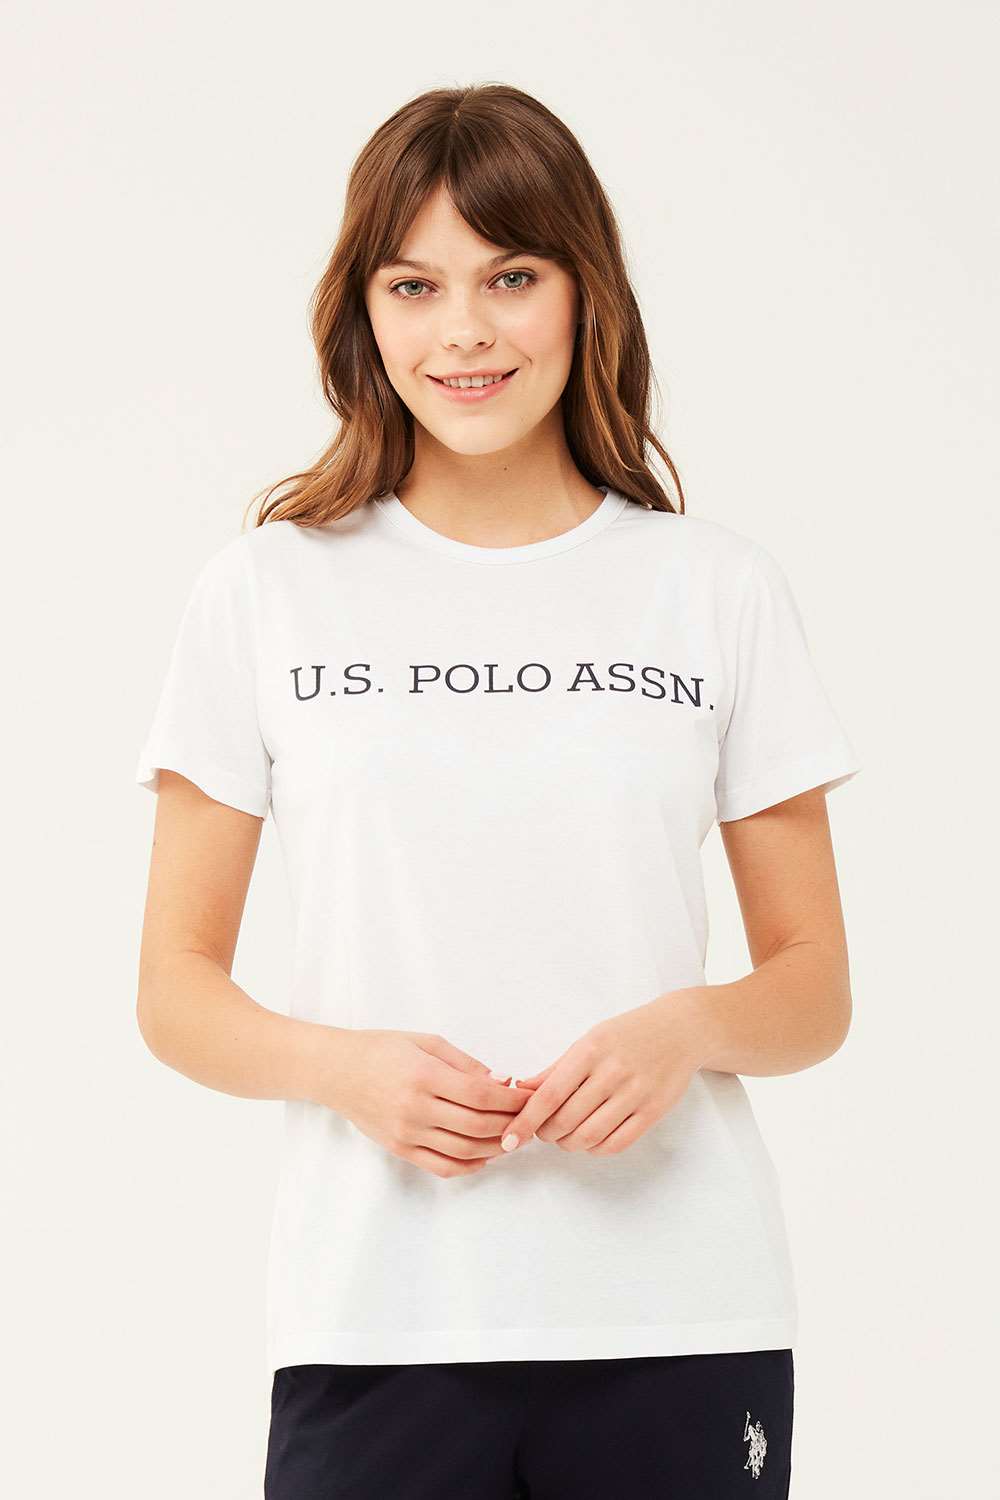 U.S. Polo Assn. Kadın Beyaz Yuvarlak Yaka T-shirt | Modcollection.com.tr